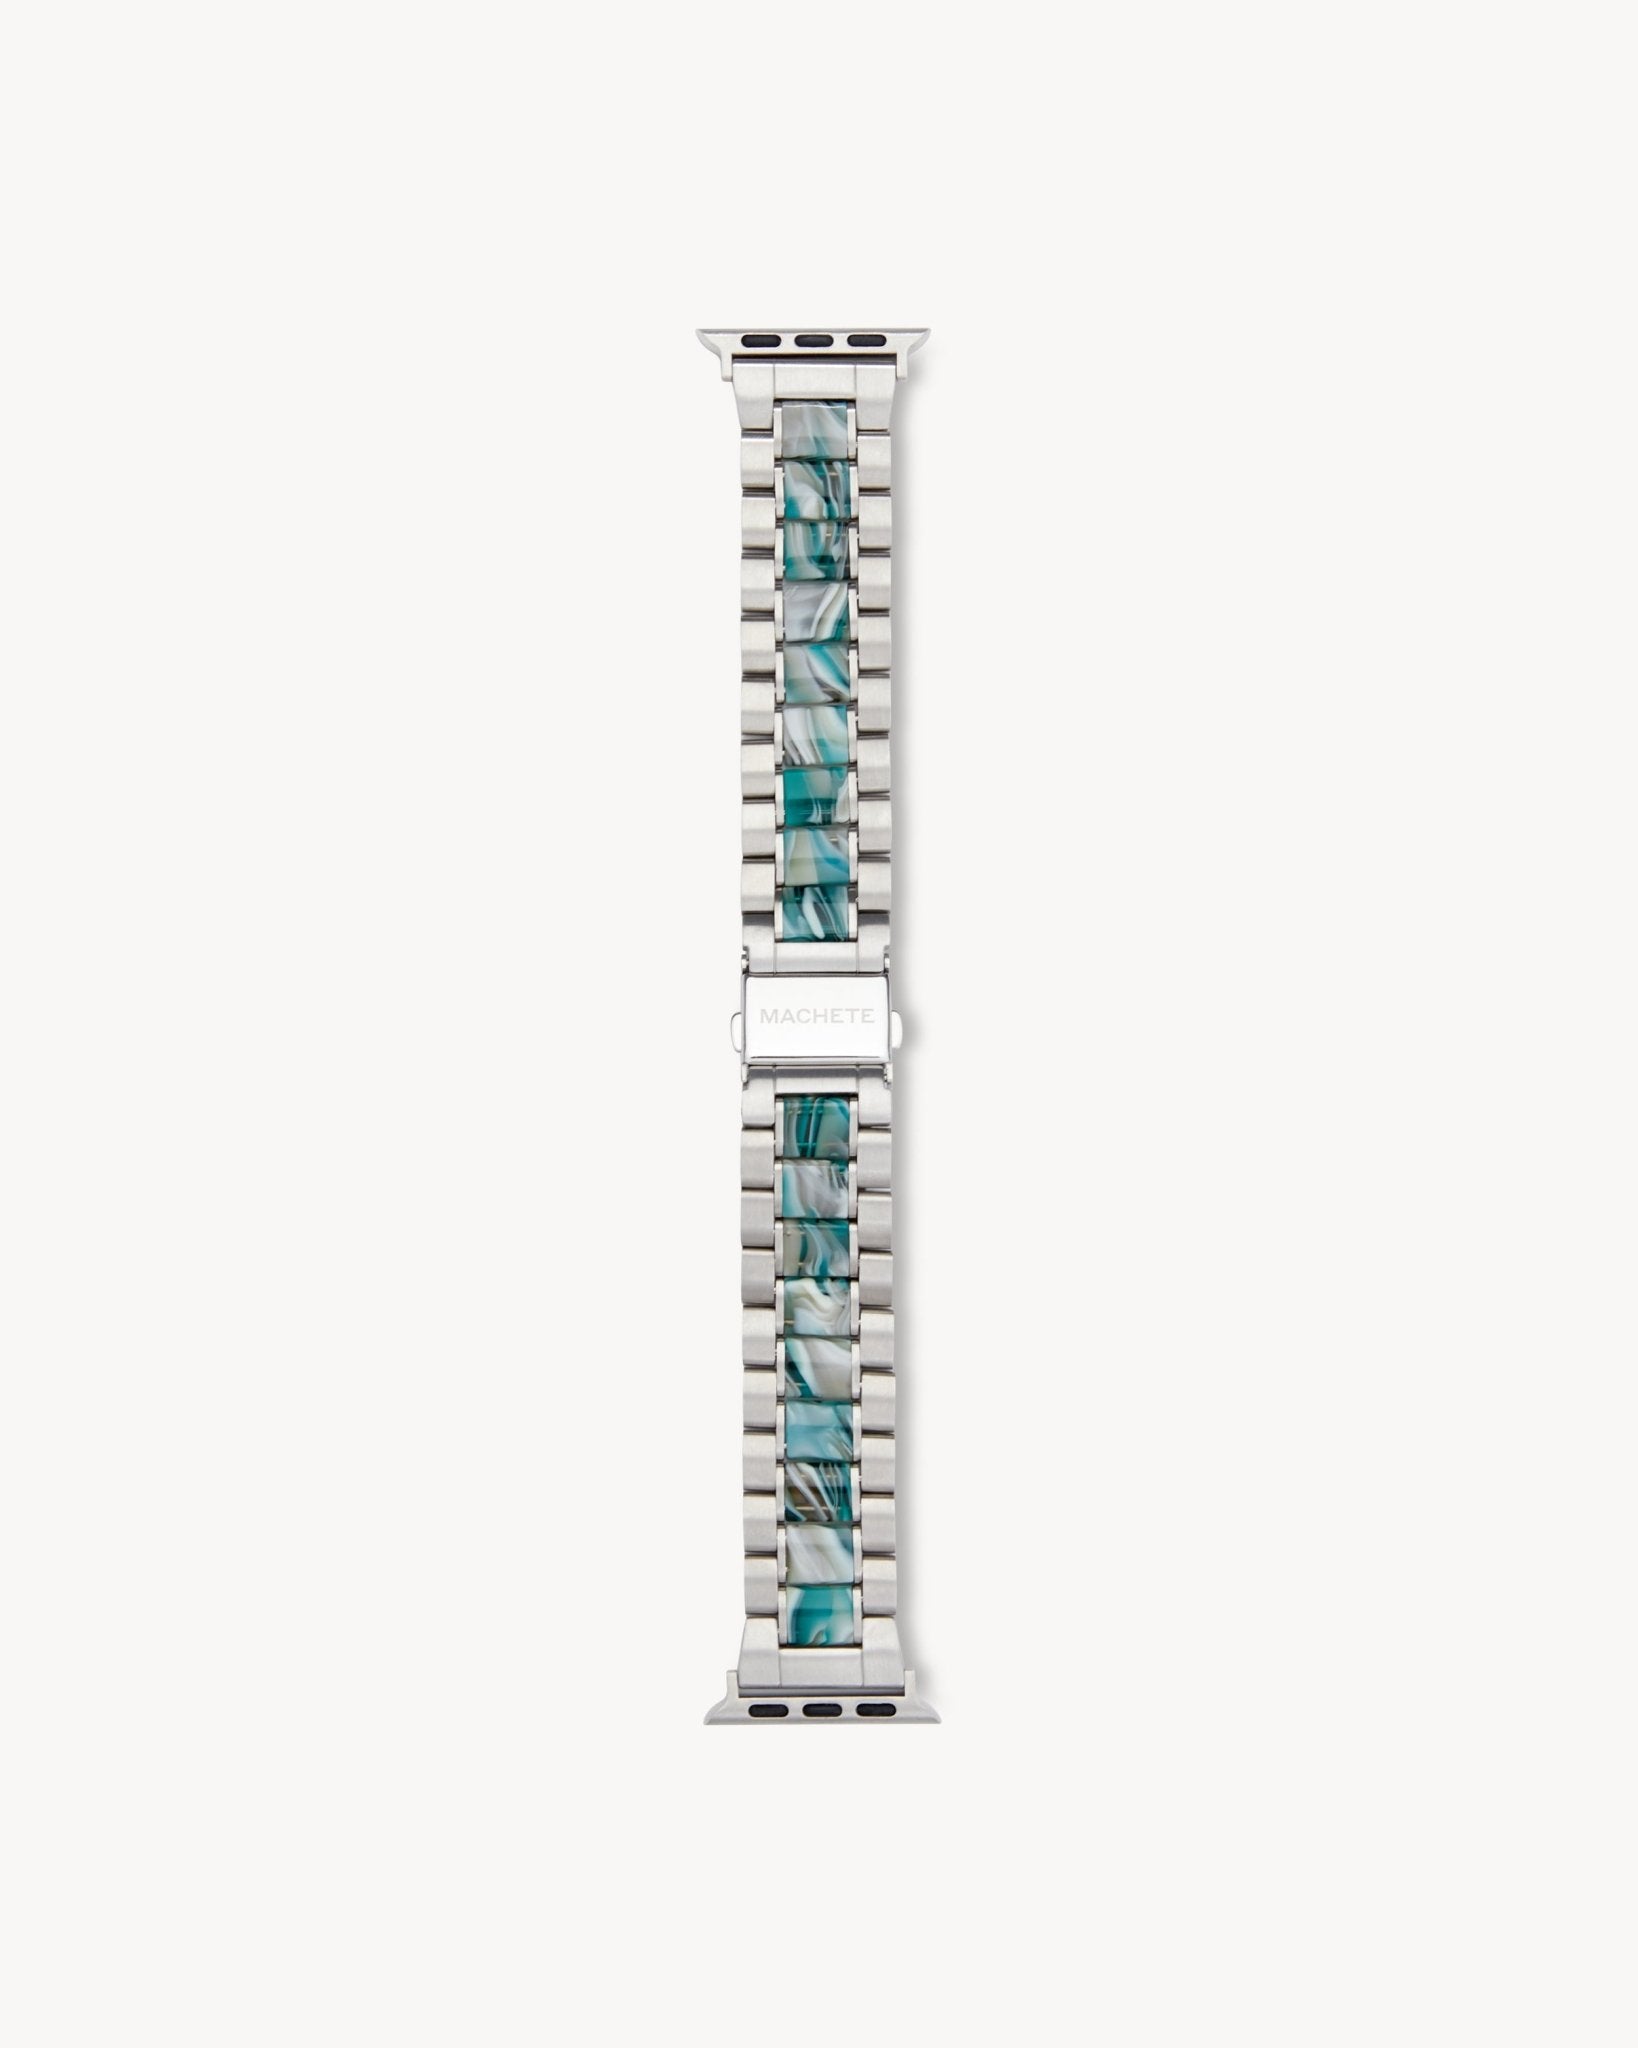 Boyfriend Apple Watch Band in Stromanthe - MACHETE